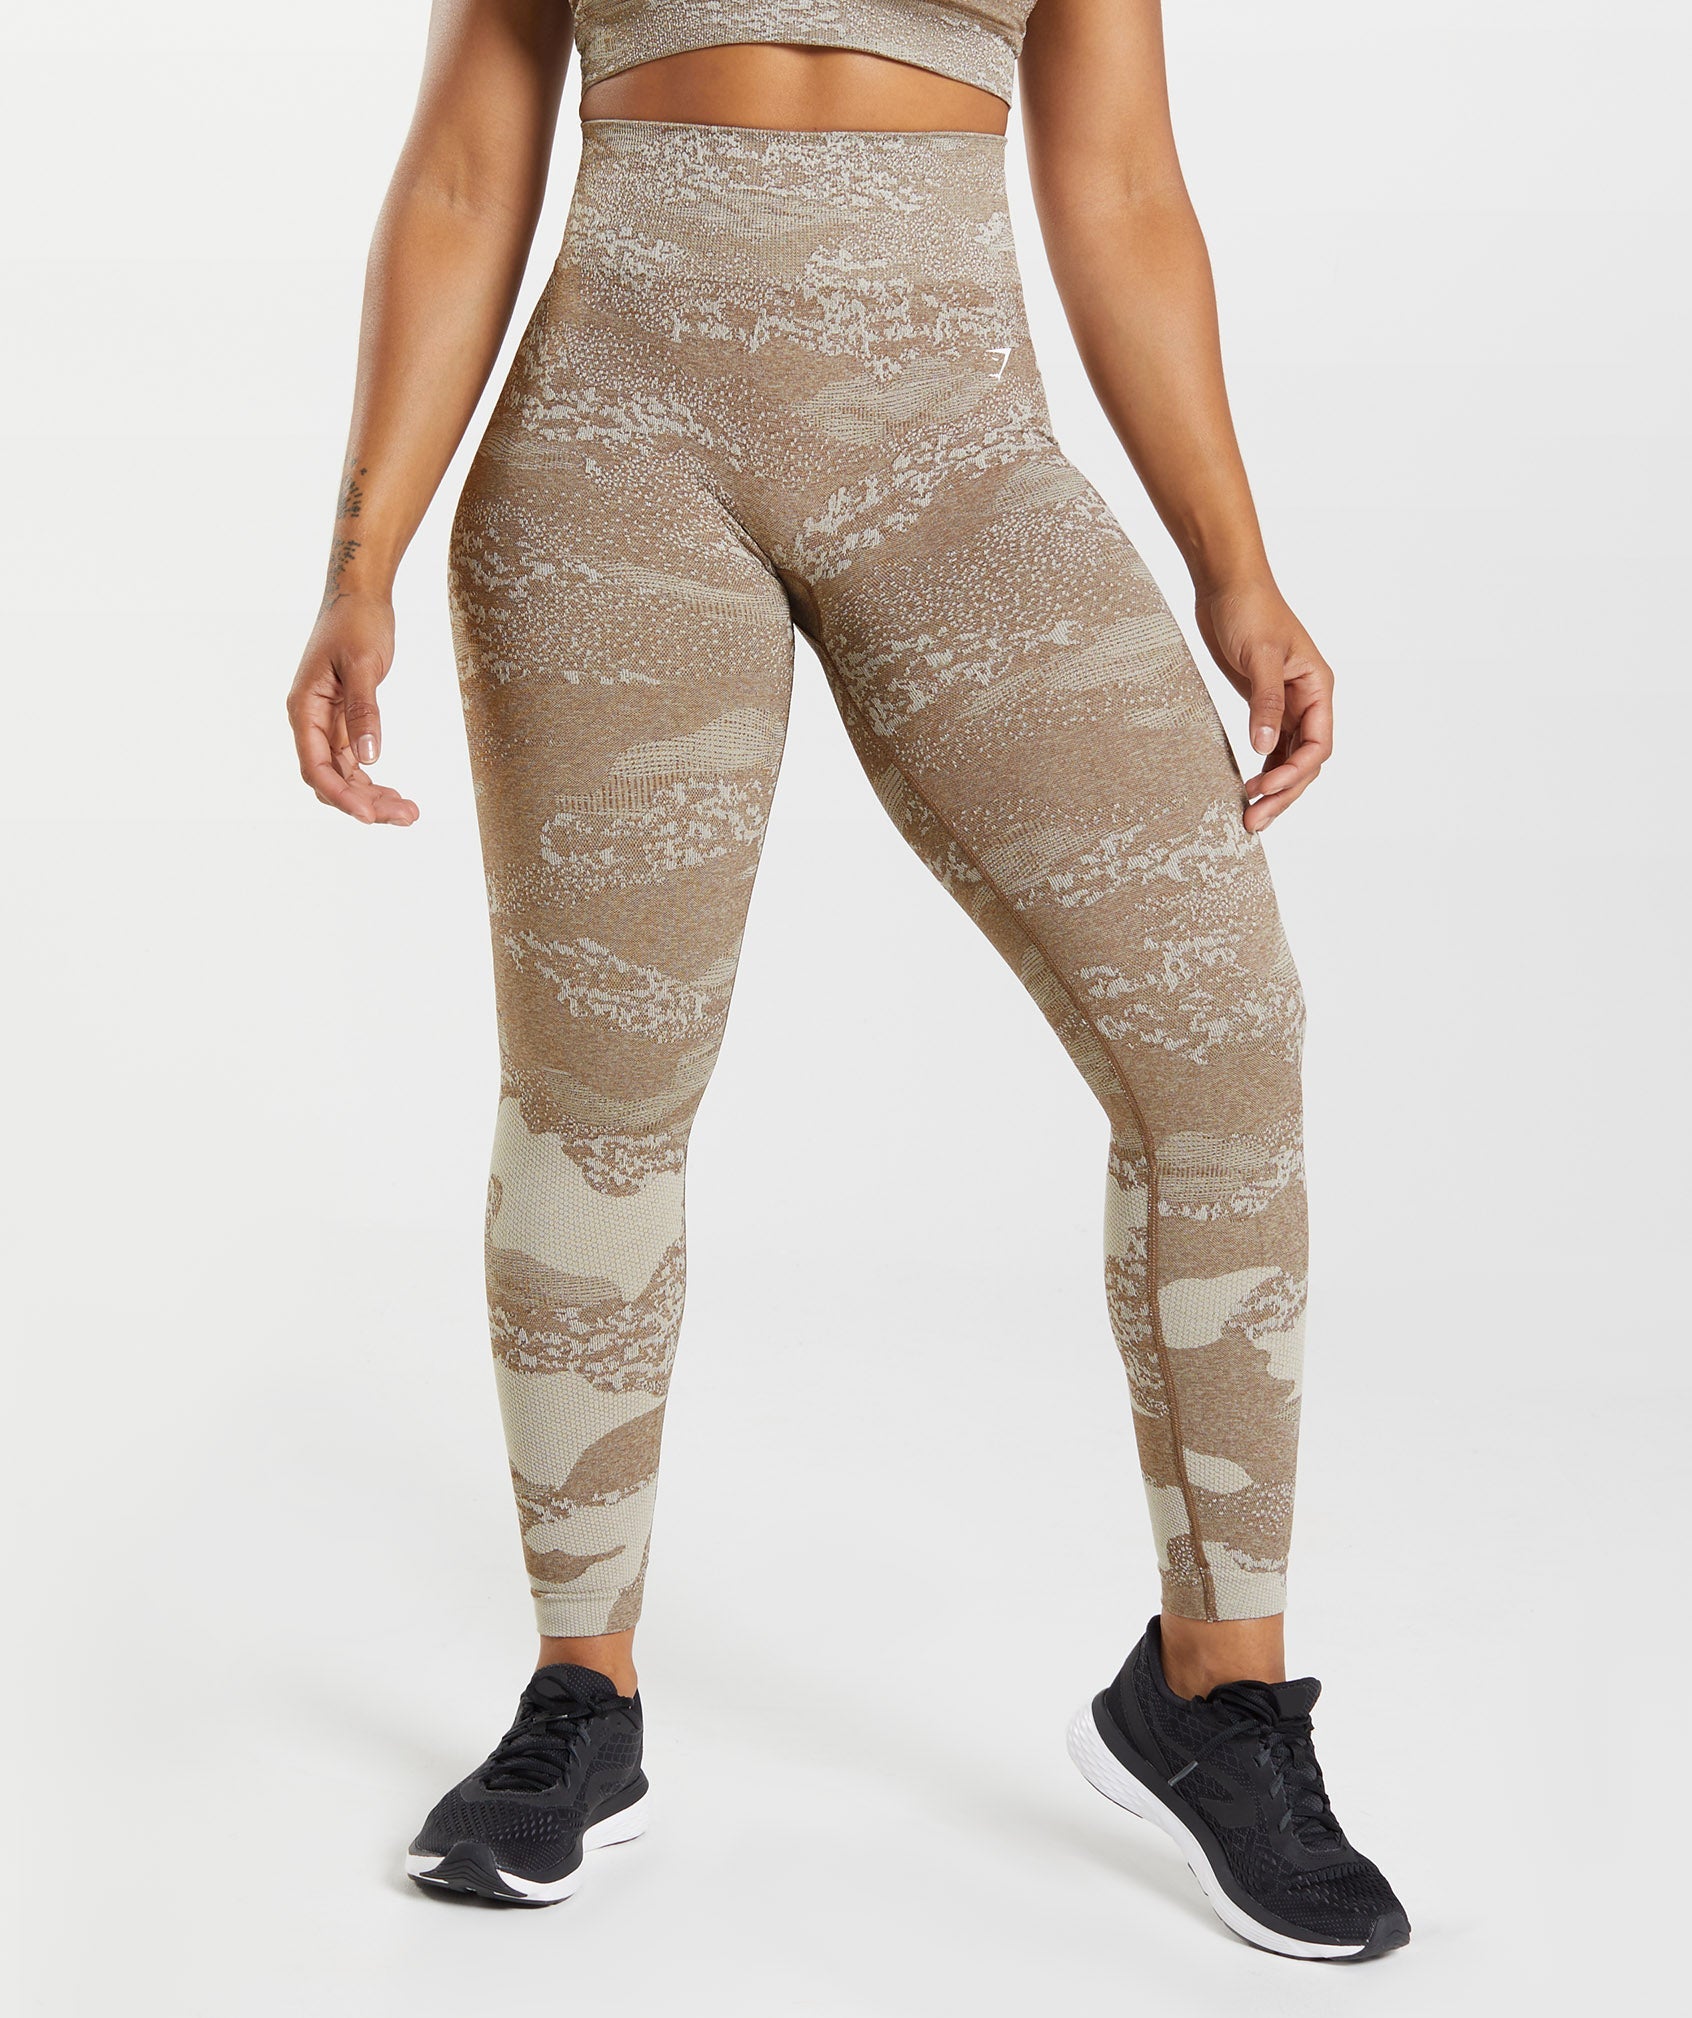 Alosoft Leggingswomen's Seamless Spandex Yoga Pants - Gymshark-inspired Fitness  Leggings